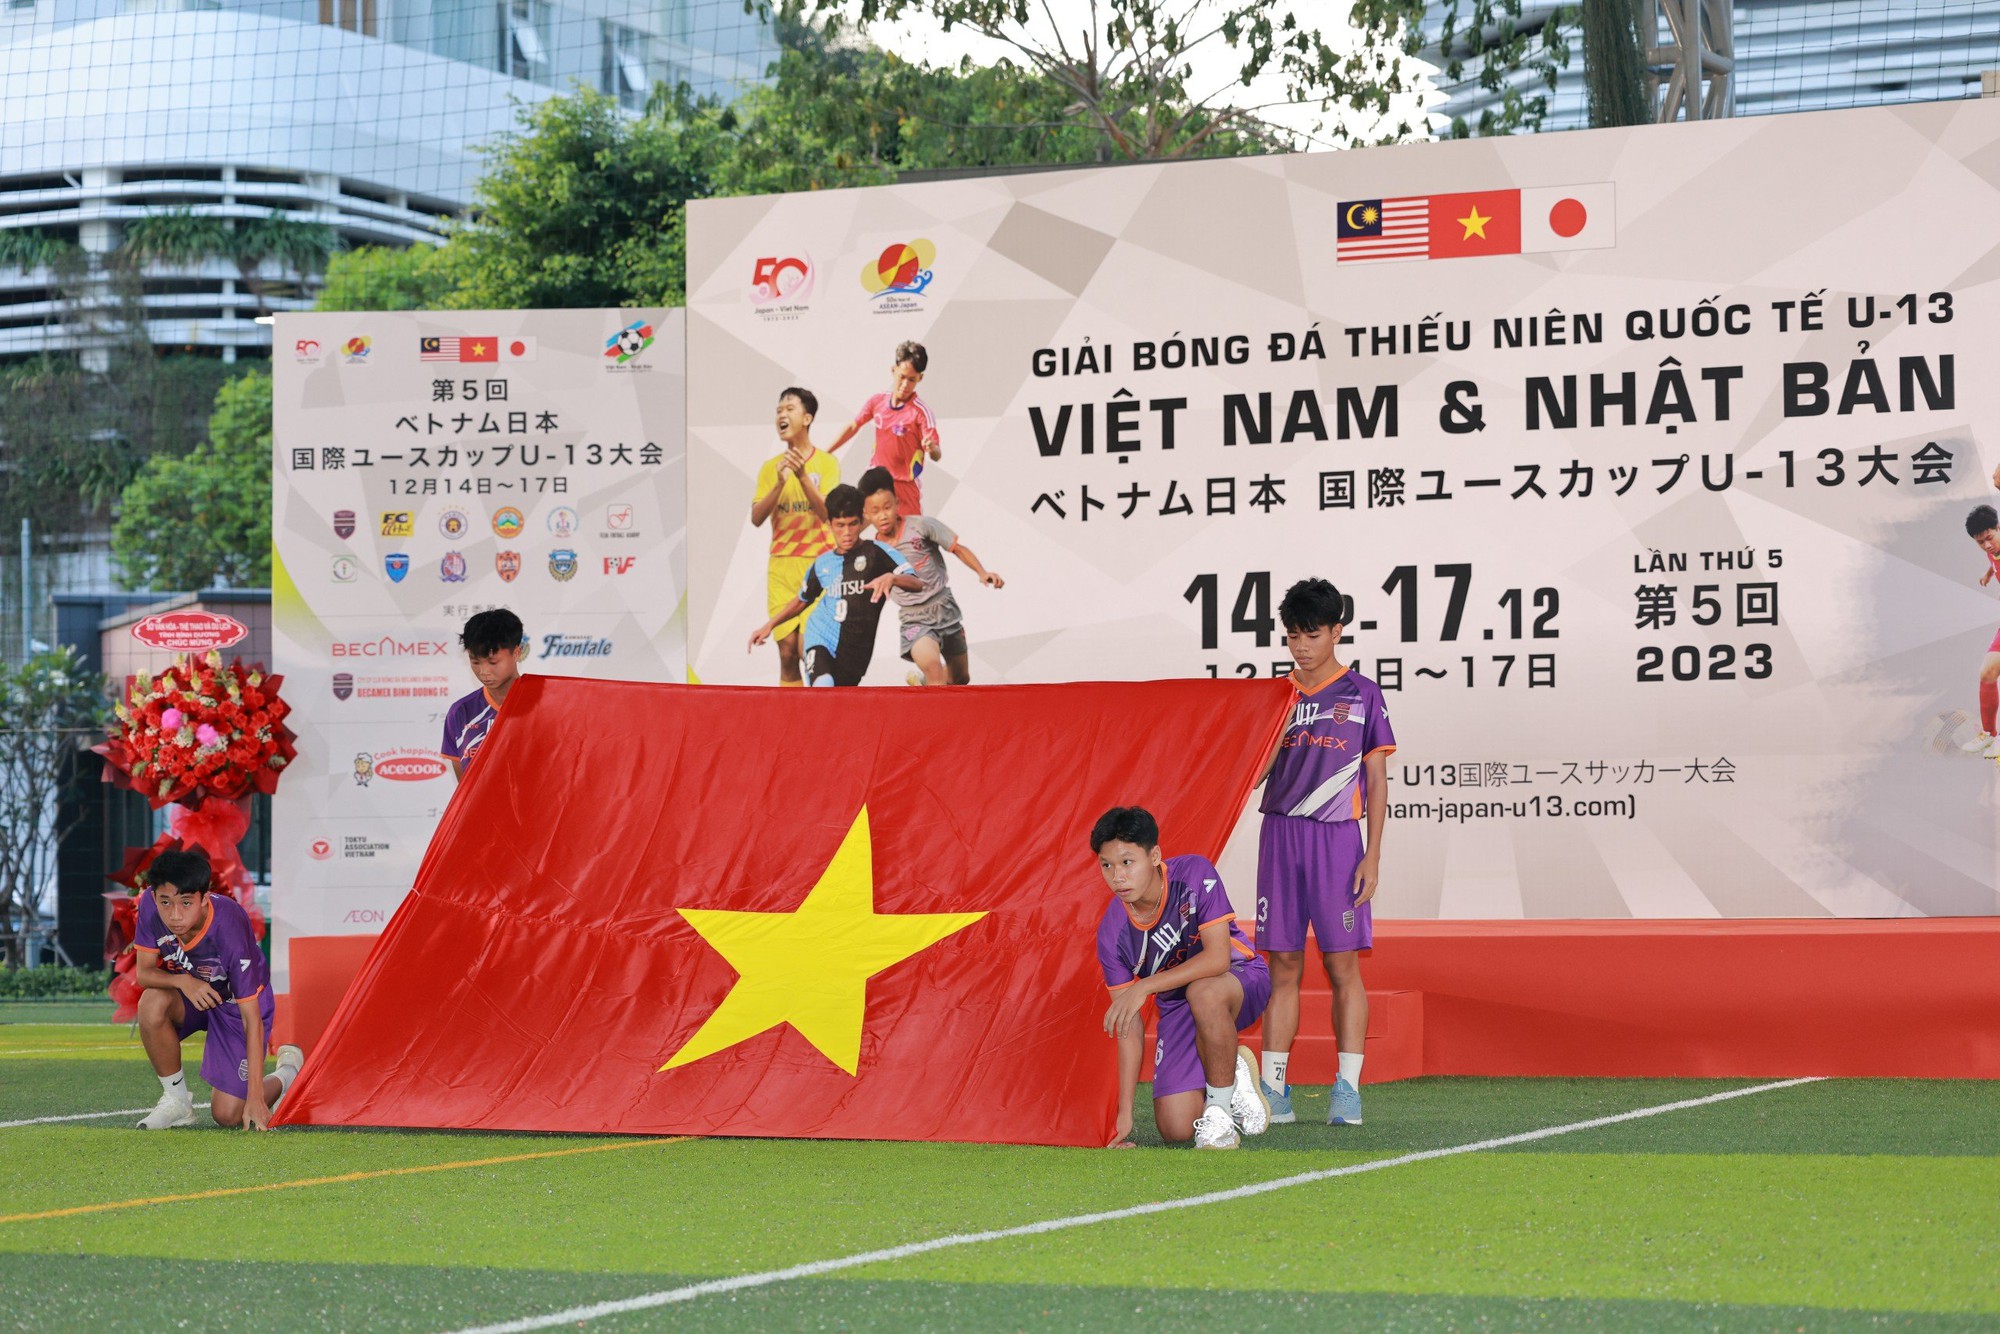 4 CLB Nhật Bản tham dự giải bóng đá thiếu niên tại Việt Nam - Ảnh 1.